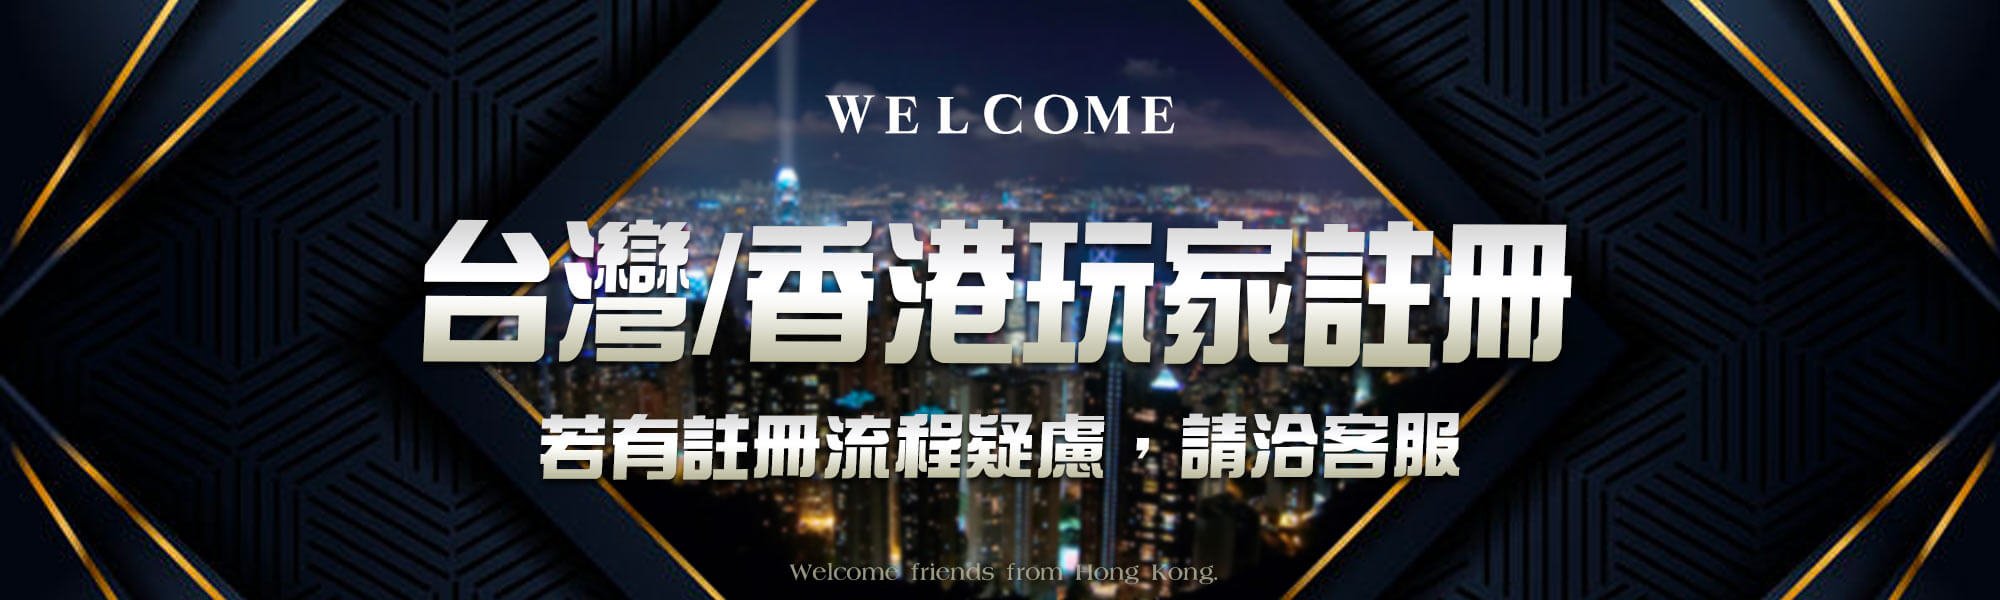 開放香港玩家註冊-KU娛樂城娛樂城